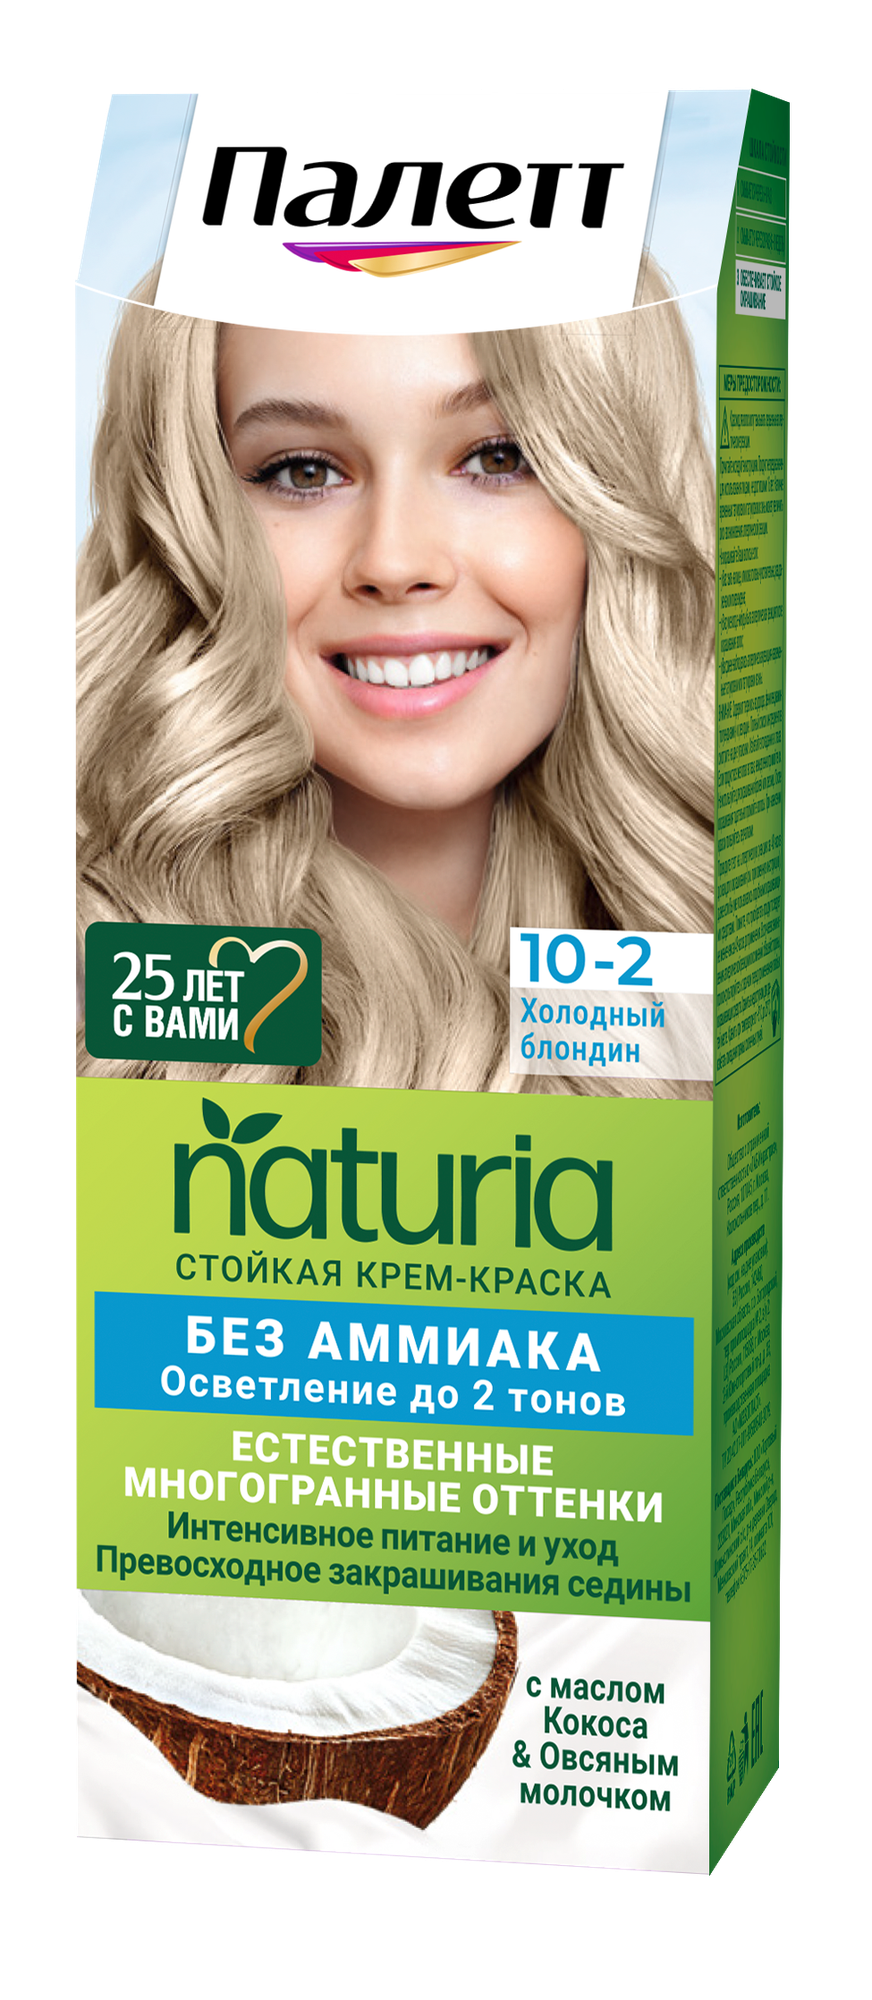 Palette Стойкая крем-краска для волос Naturia, тон 10-2 Холодный блондин, 110 мл